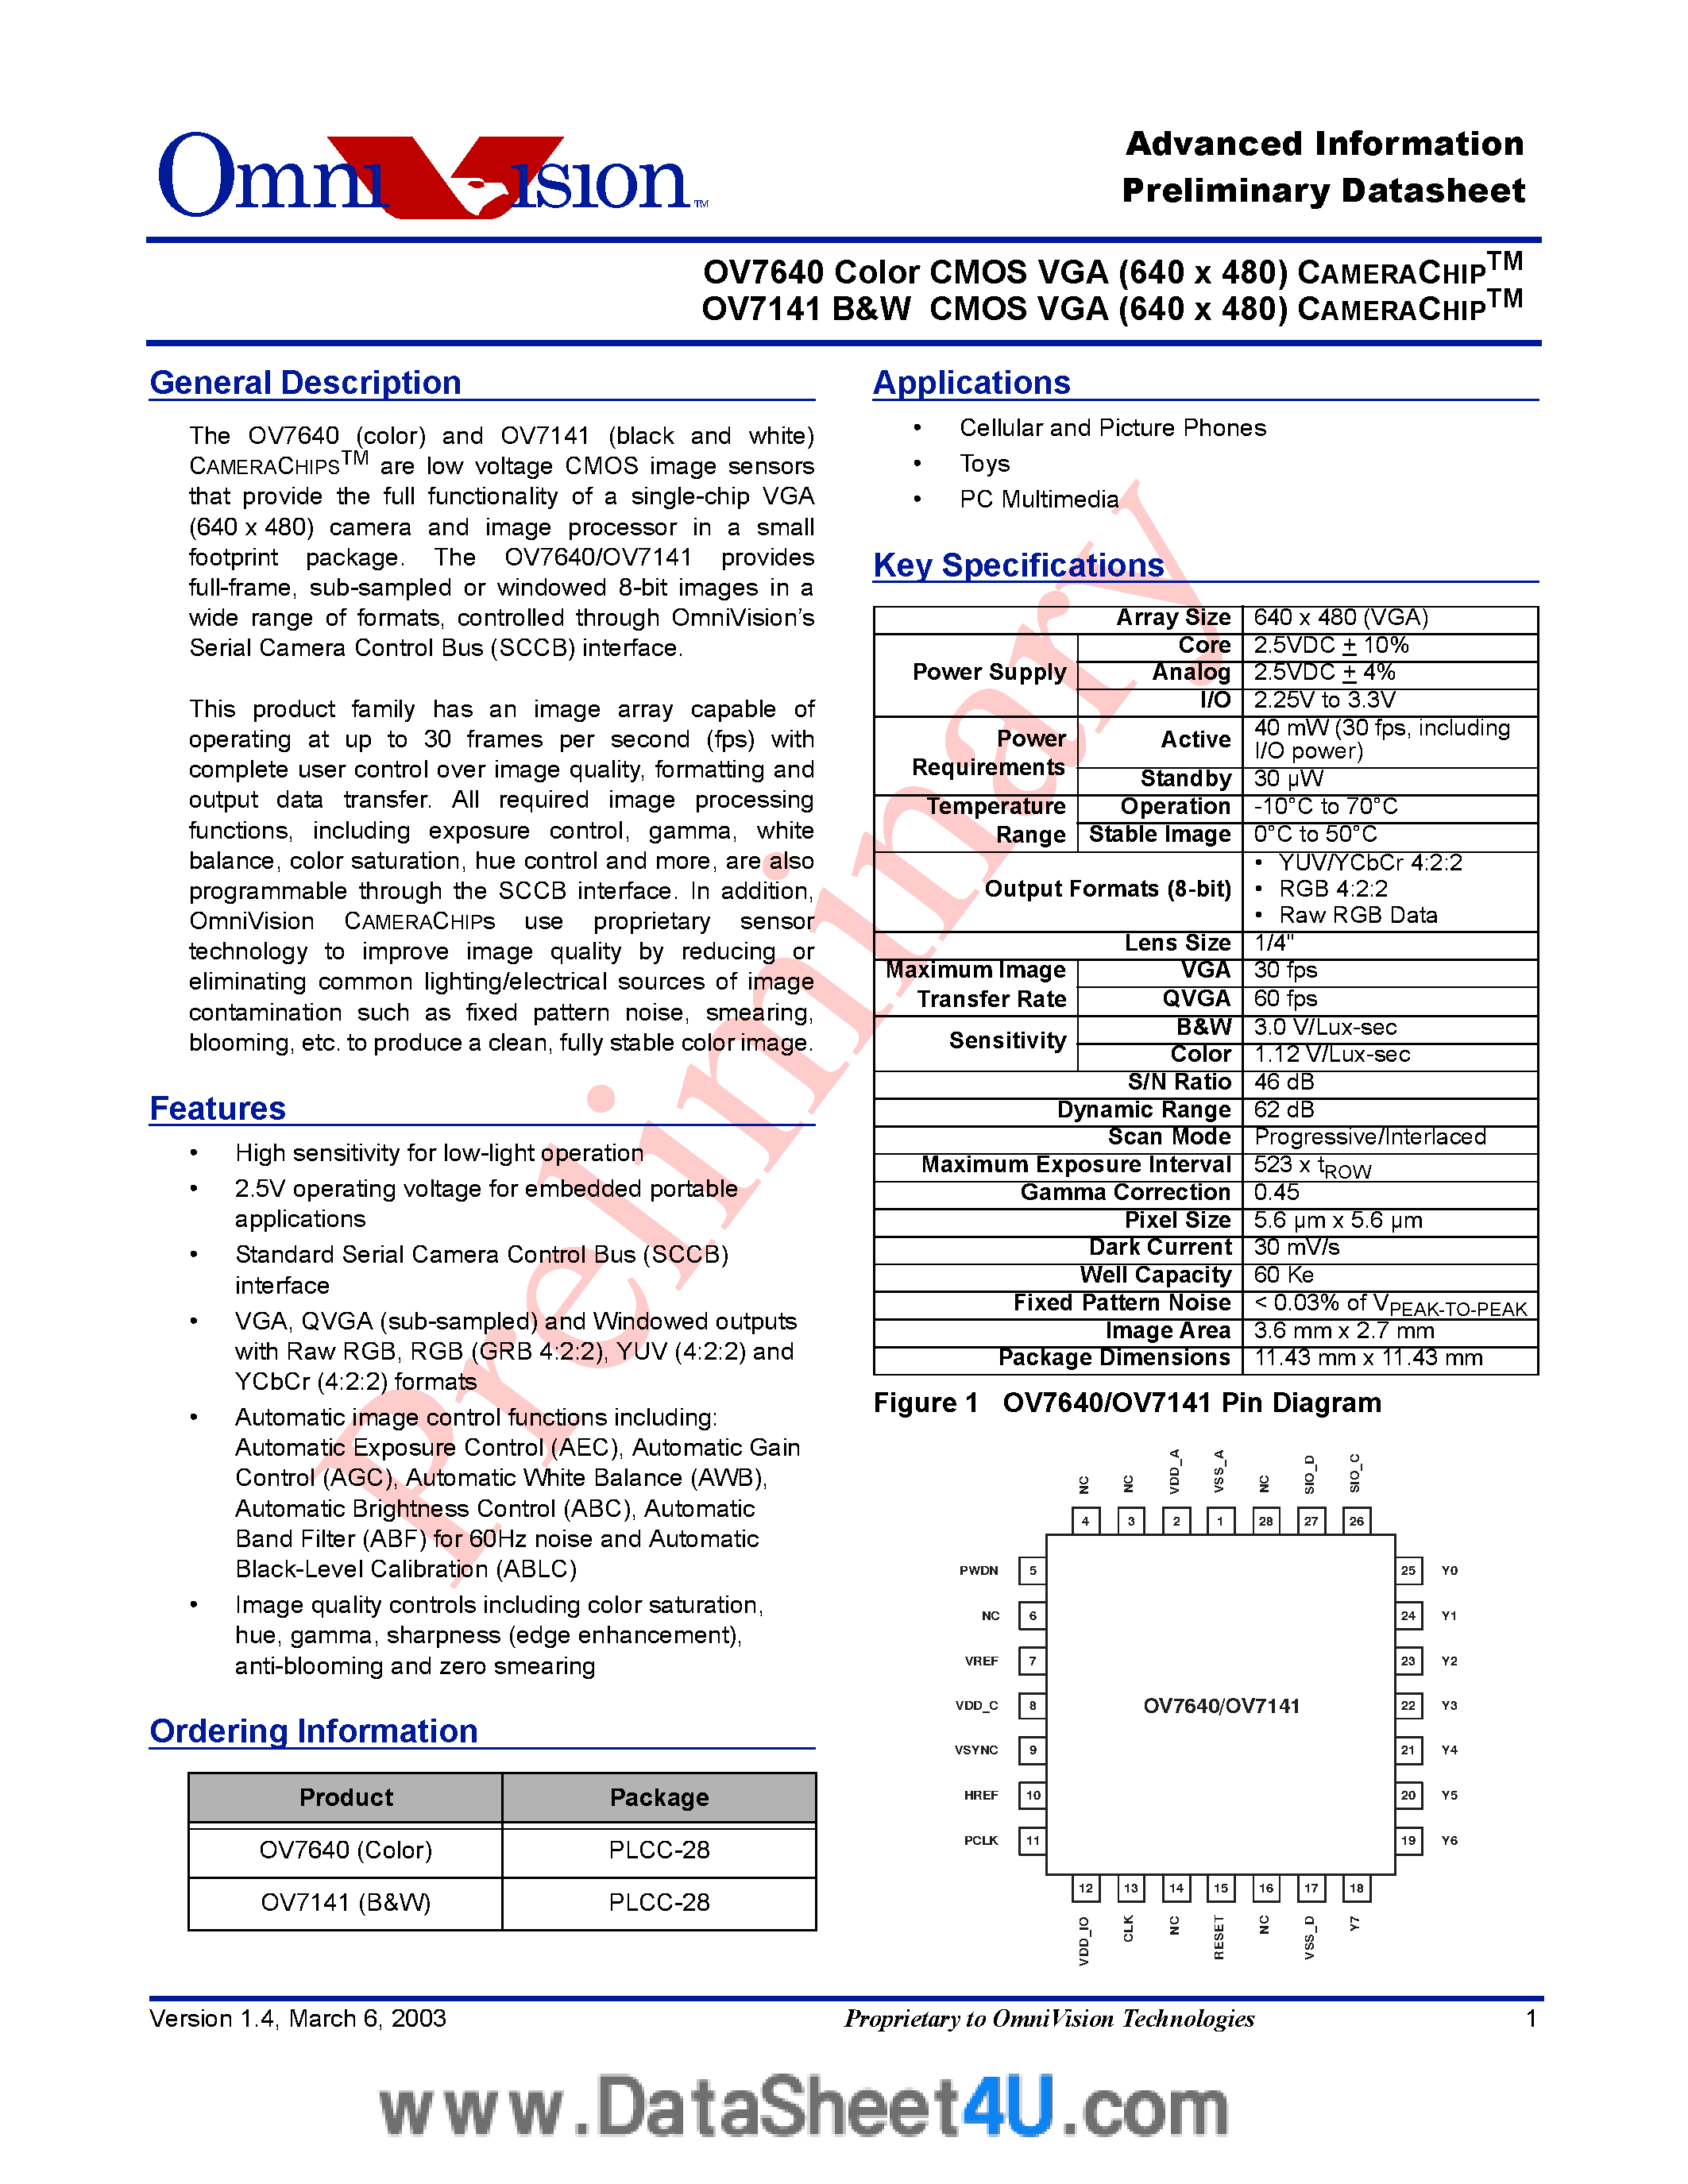 Datasheet OV7141 - (OV7141 / OV7640) B/w Vga 640 X 480 Digital CMOS Camerachipstm page 1